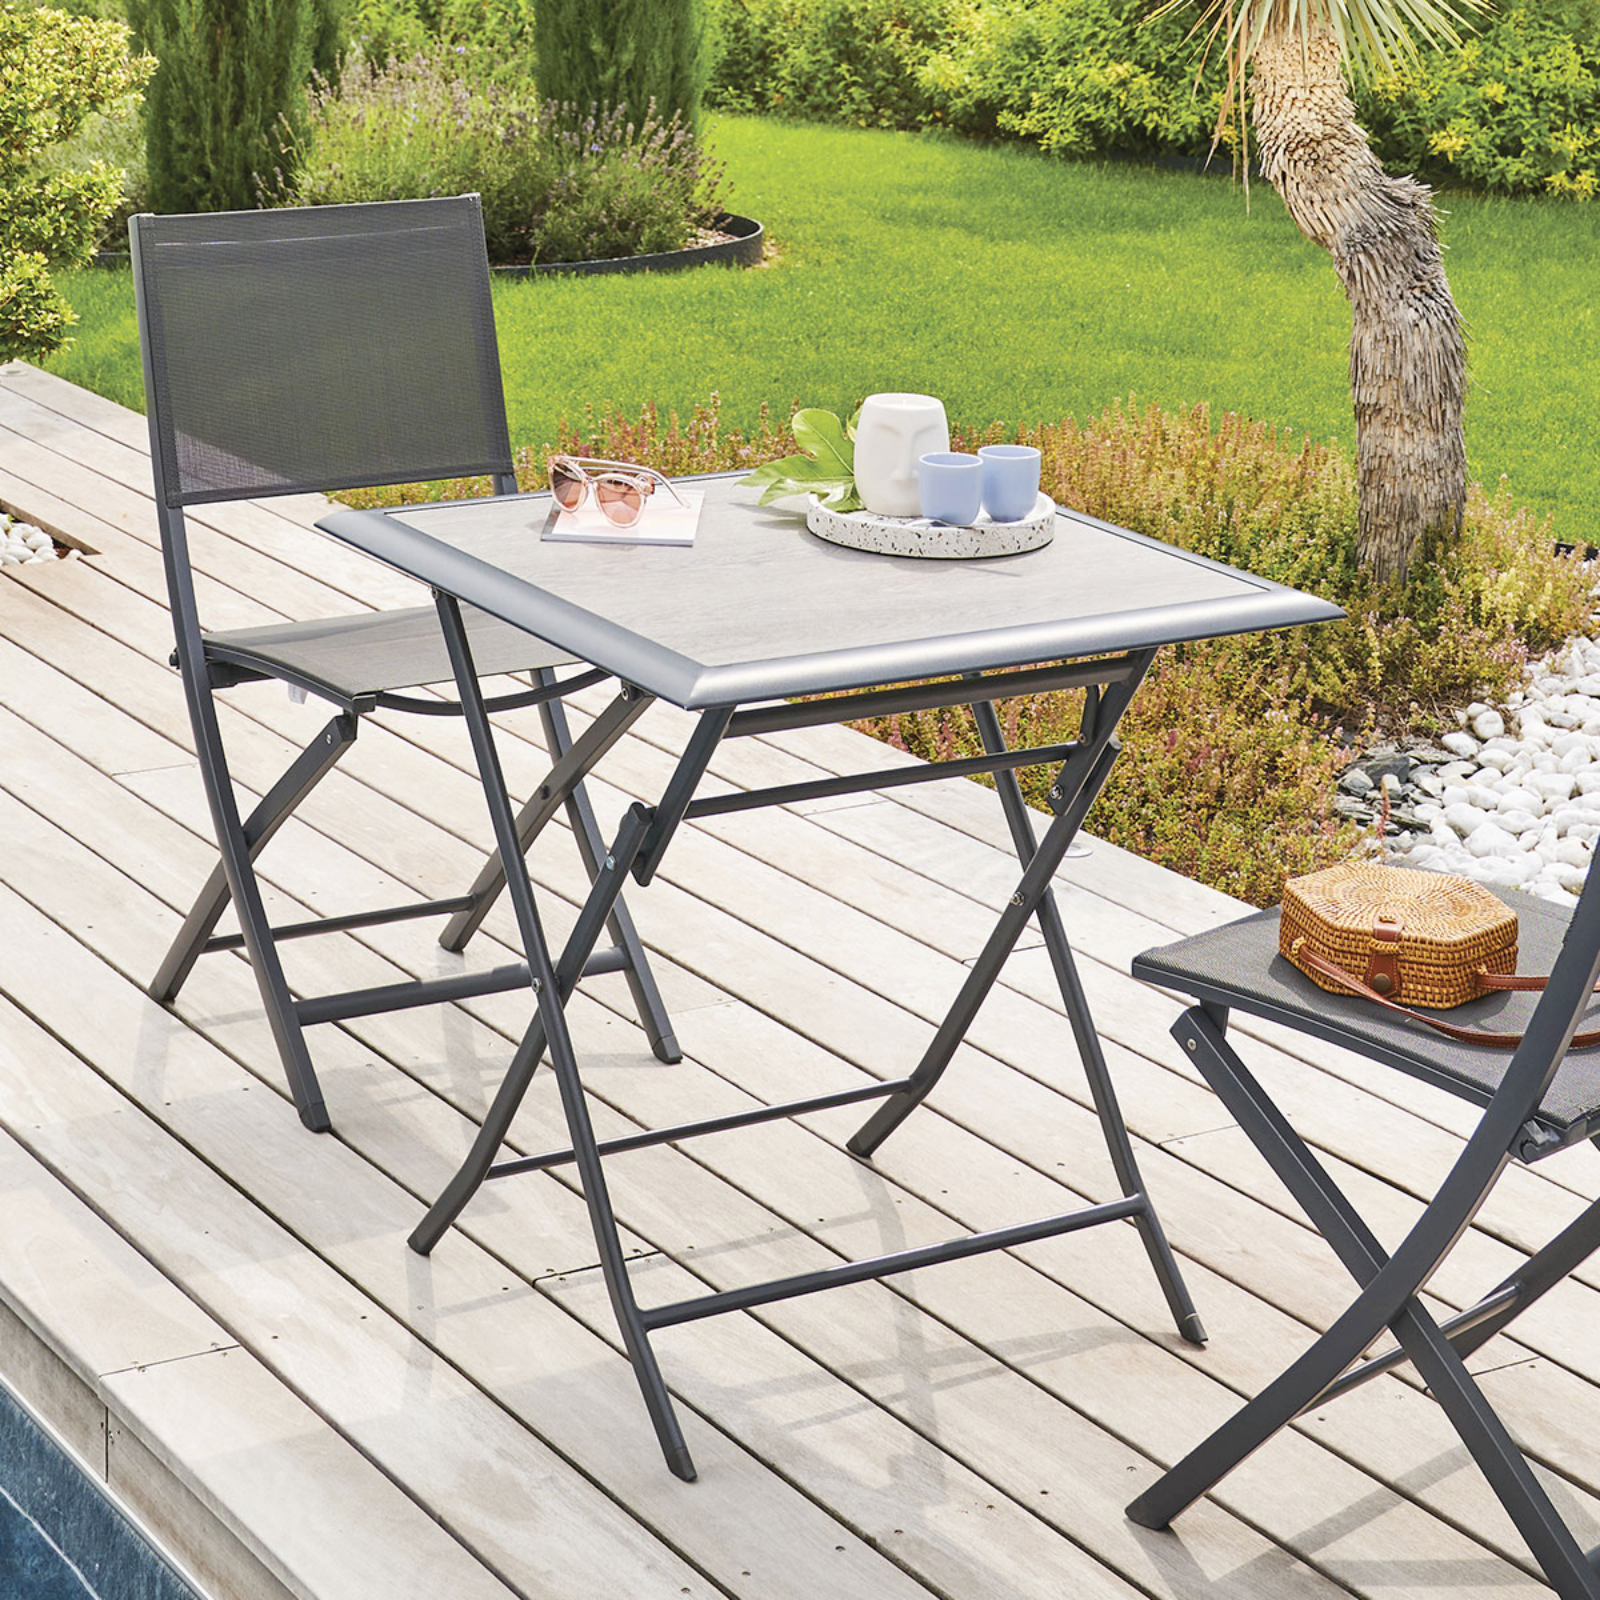 Tavolo pieghevole "Amalfi" quadrato da giardino,esterno o interno con struttura in alluminio e piano in resina